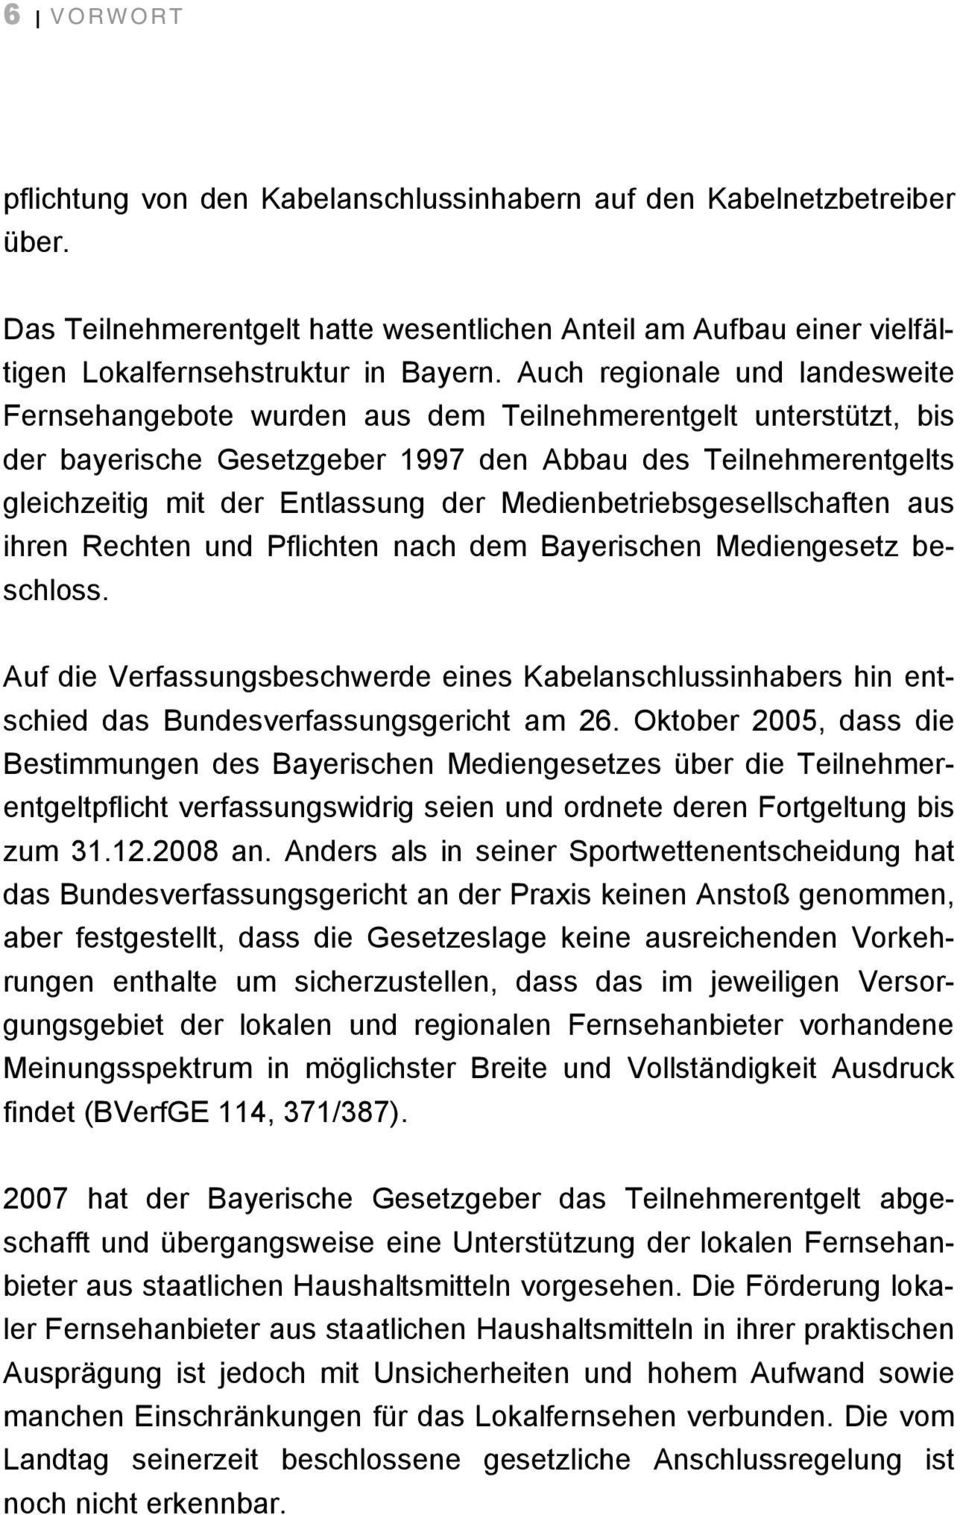 Medienbetriebsgesellschaften aus ihren Rechten und Pflichten nach dem Bayerischen Mediengesetz beschloss.